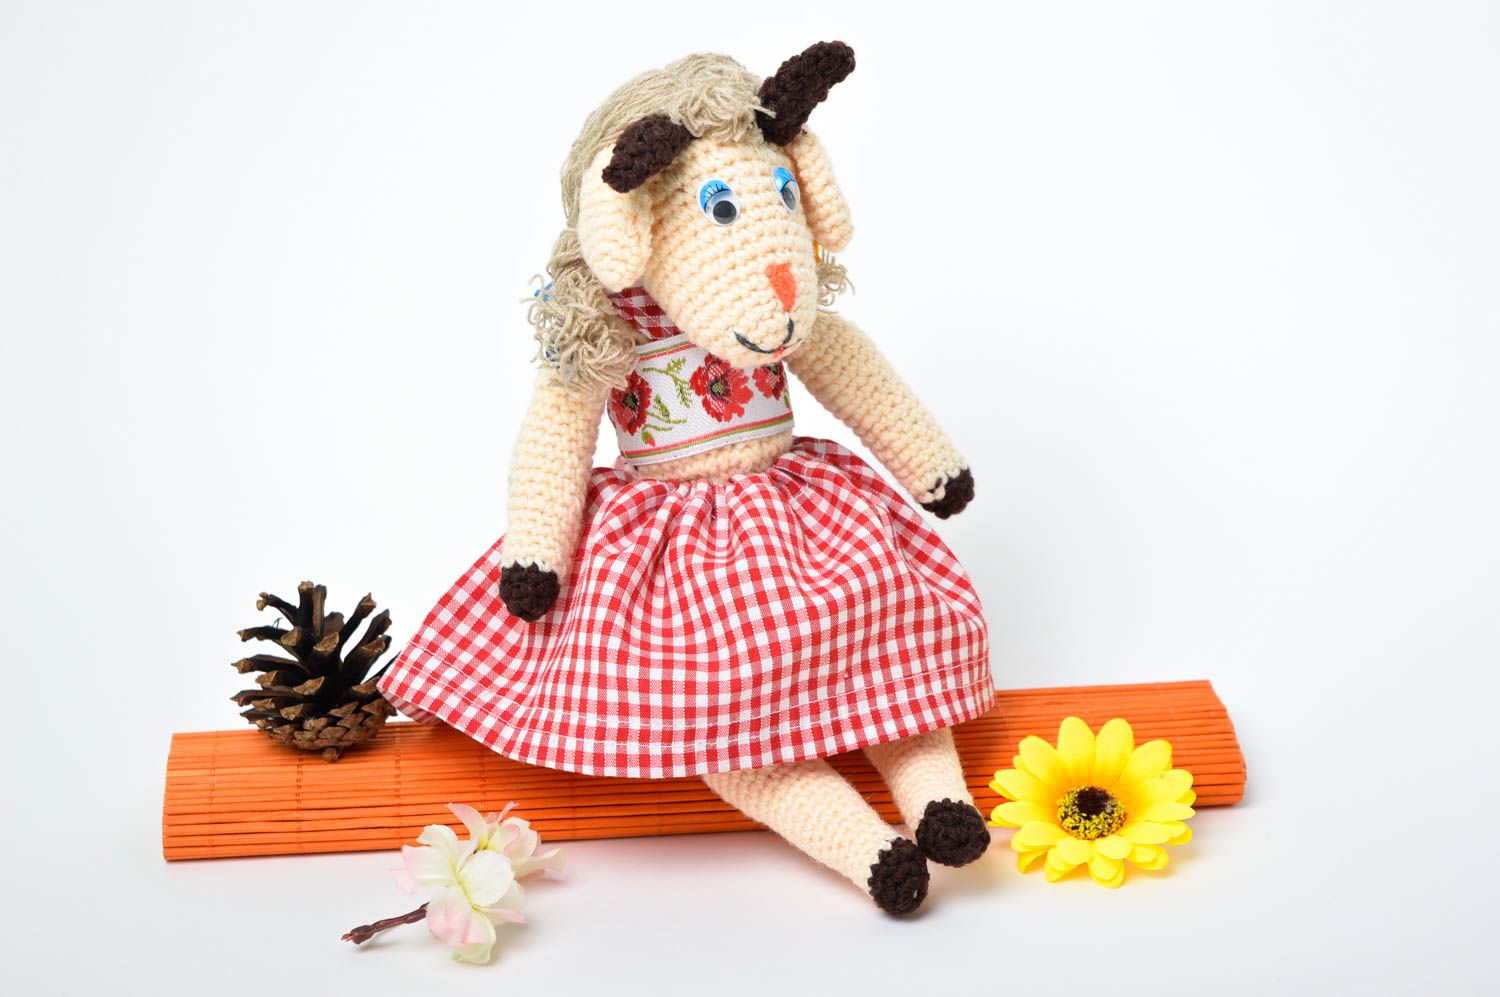 Handmade Ziege Kuscheltier Geburtstag Geschenk Kuschel Tier Textil Spielzeug foto 1